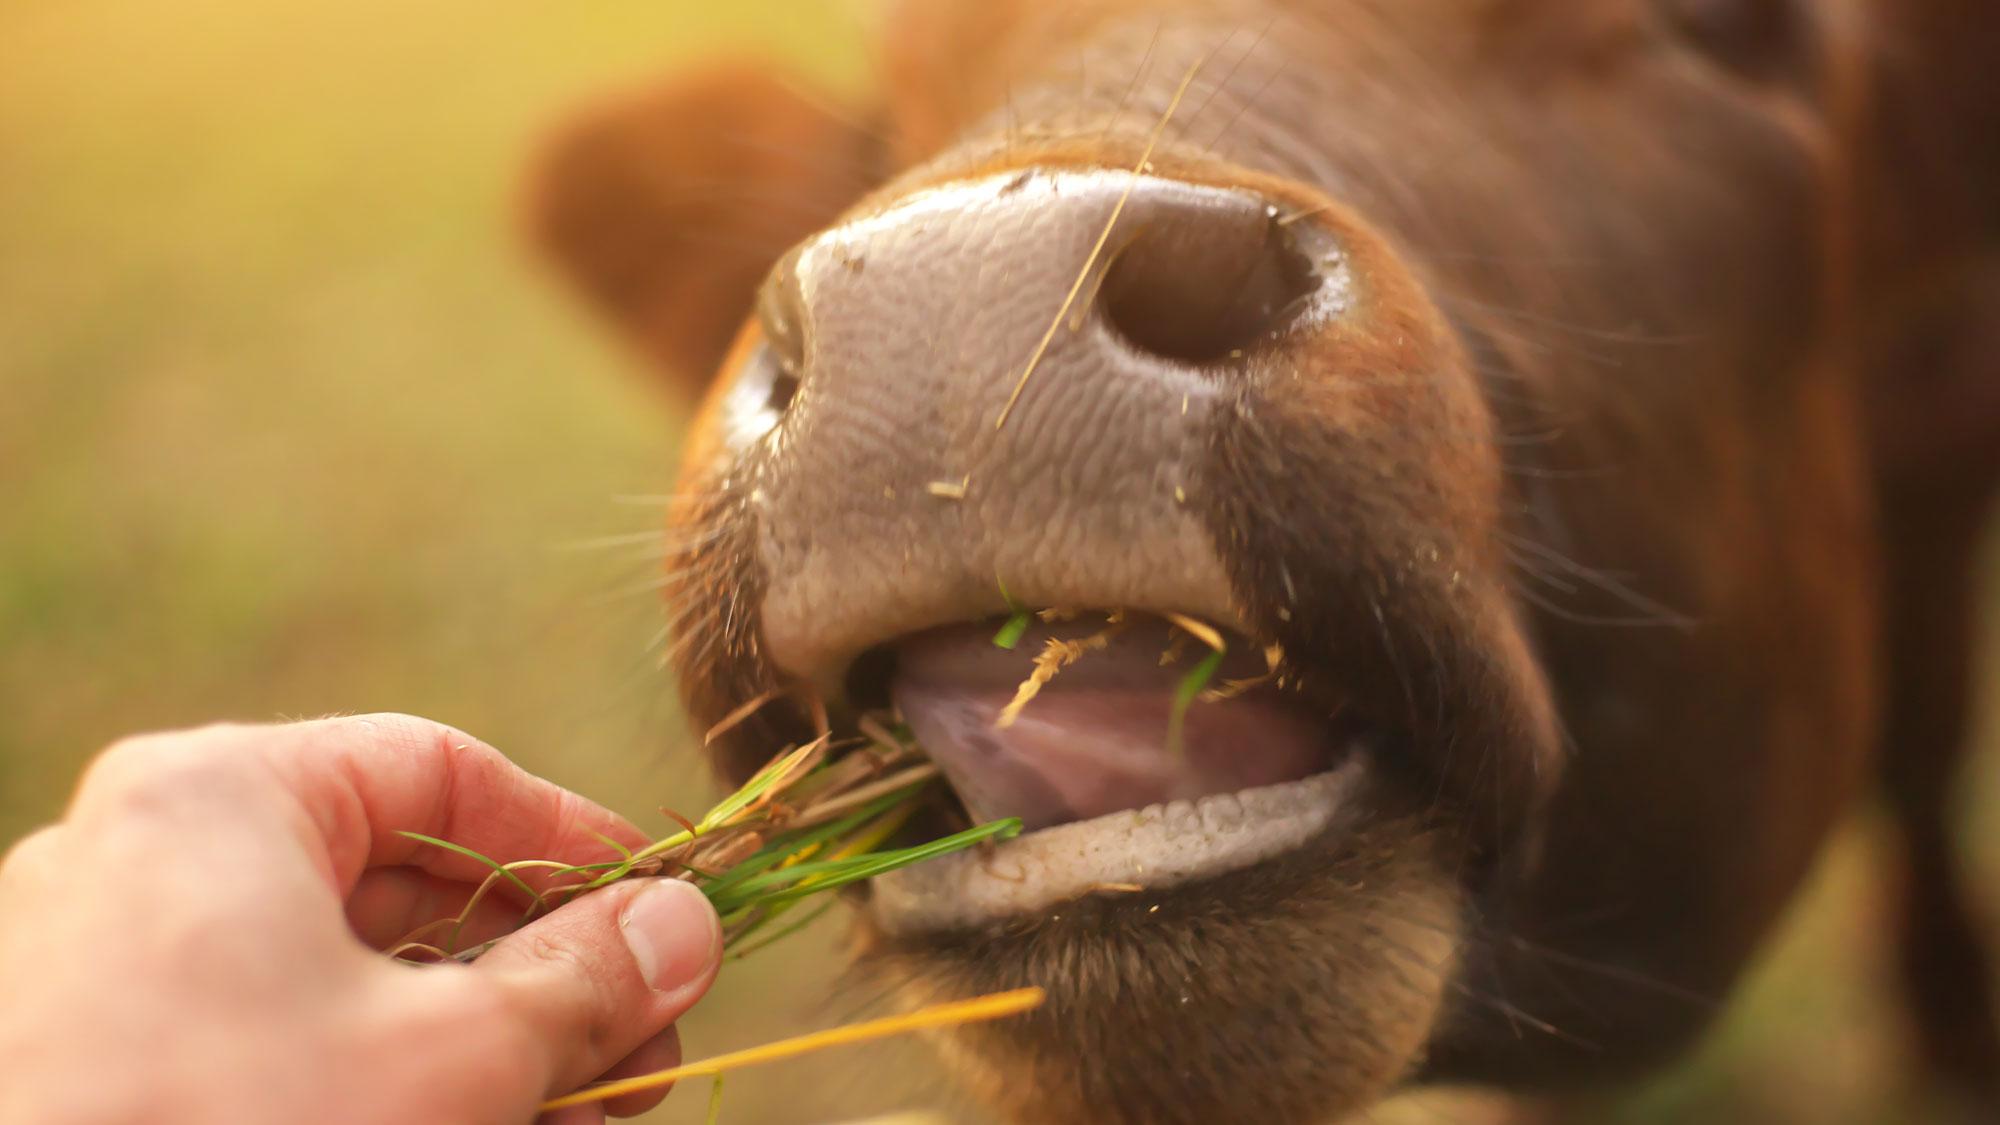 Zdravje živali, okolje in varna hrana